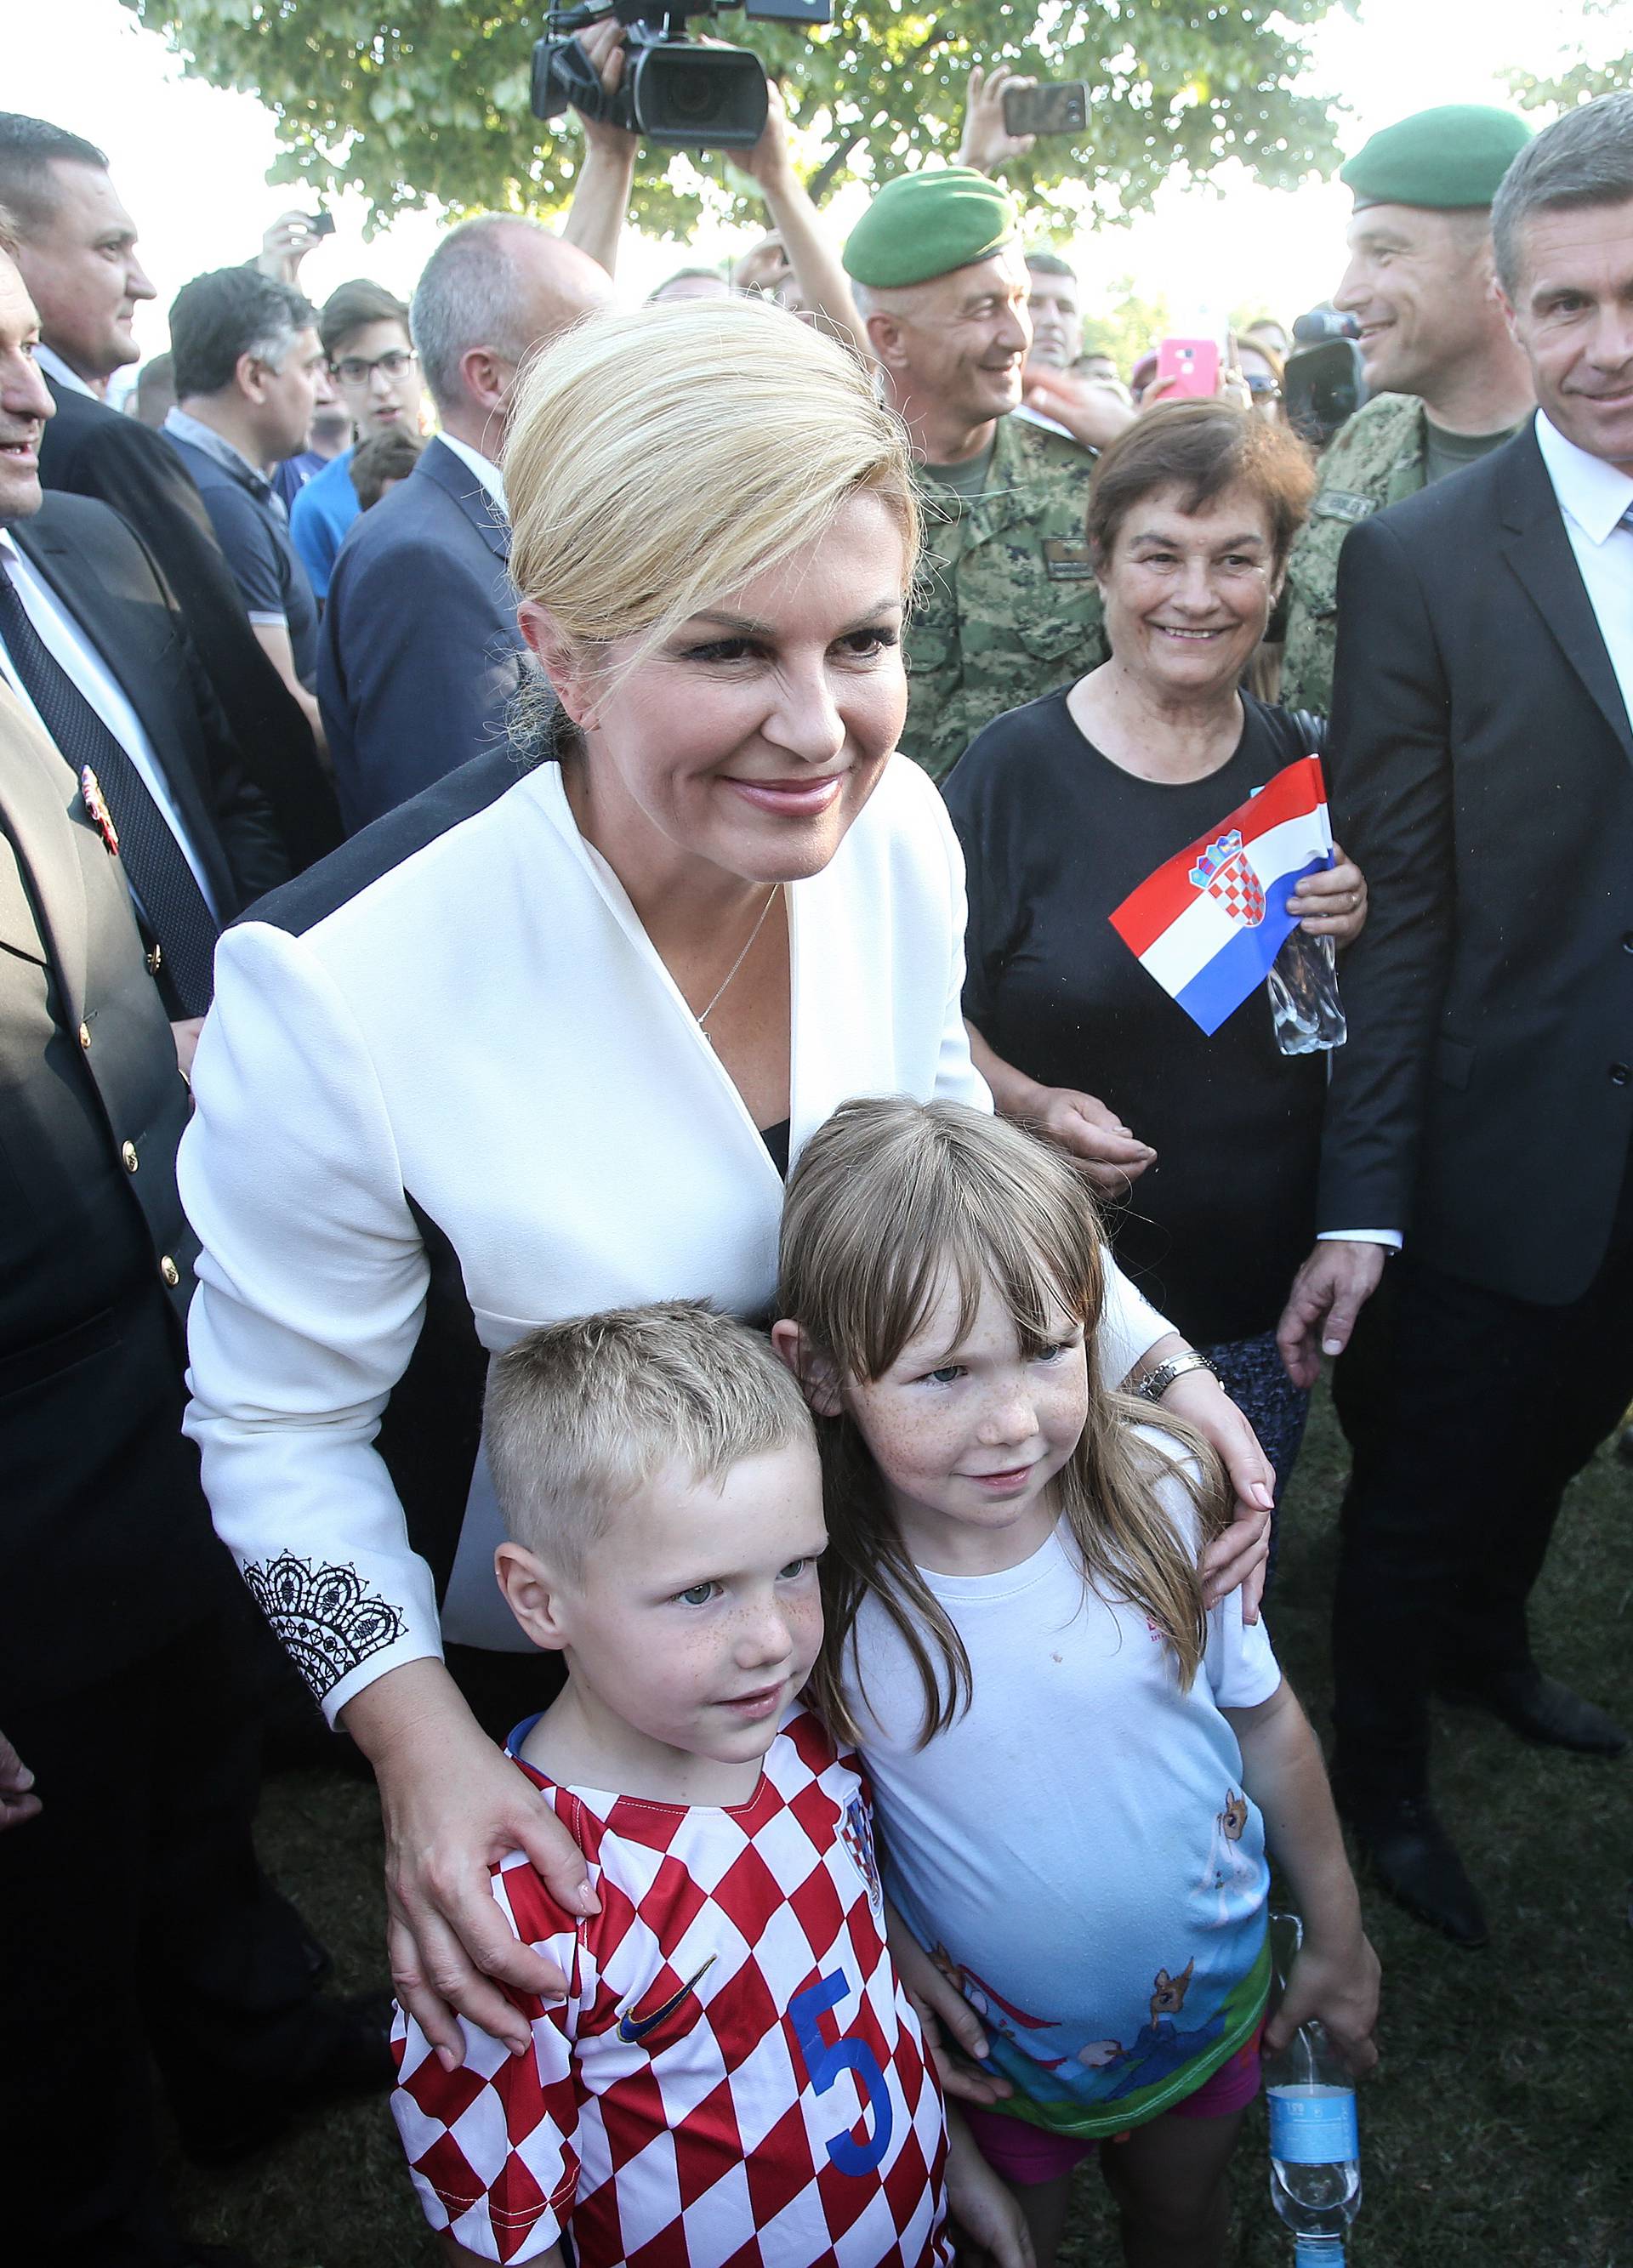 'Hrvatska vojska profilirala se iz ratne u mirnodopsku silu'